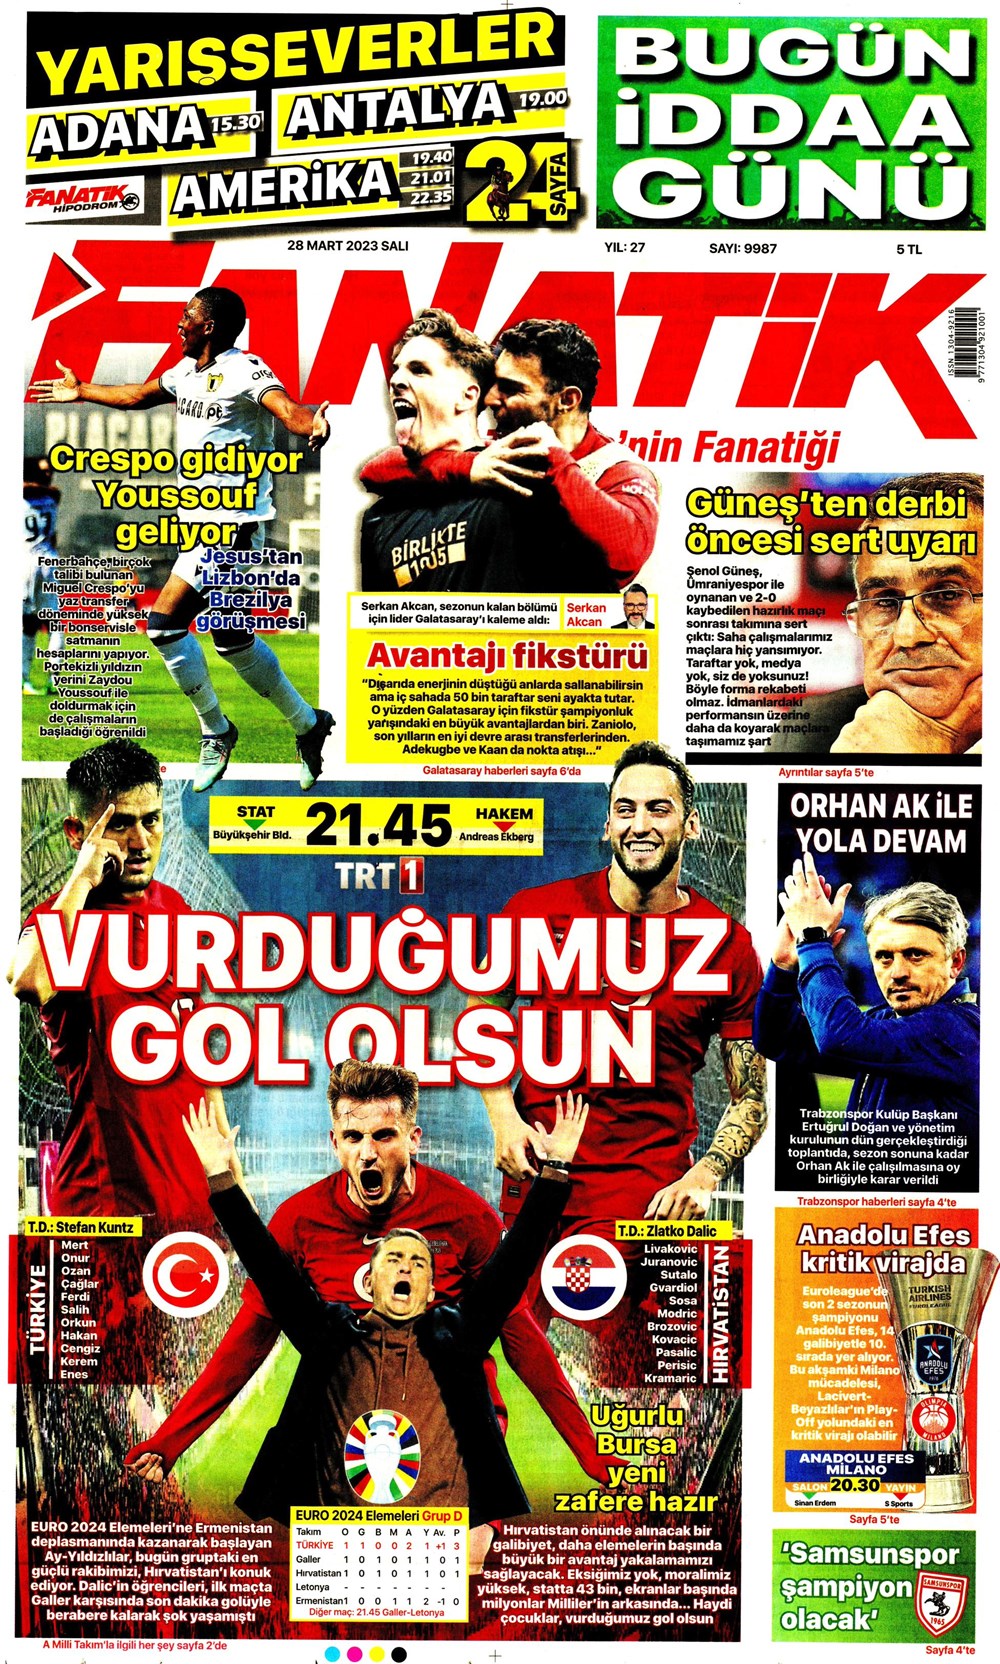 "Vurduğumuz gol olsun" - Sporun manşetleri - 1. Foto